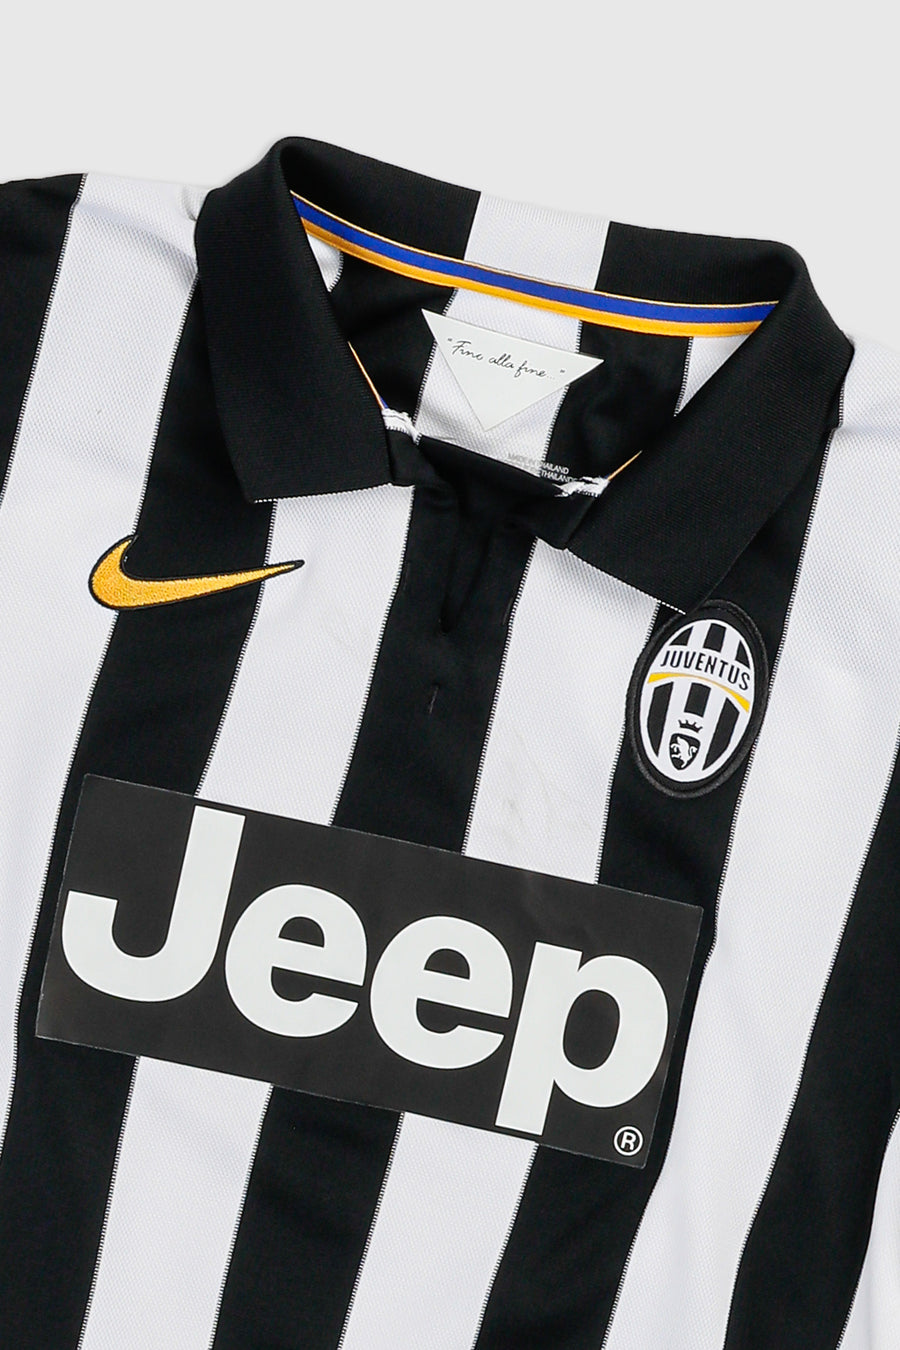 Vintage Juventus Soccer Jersey - S